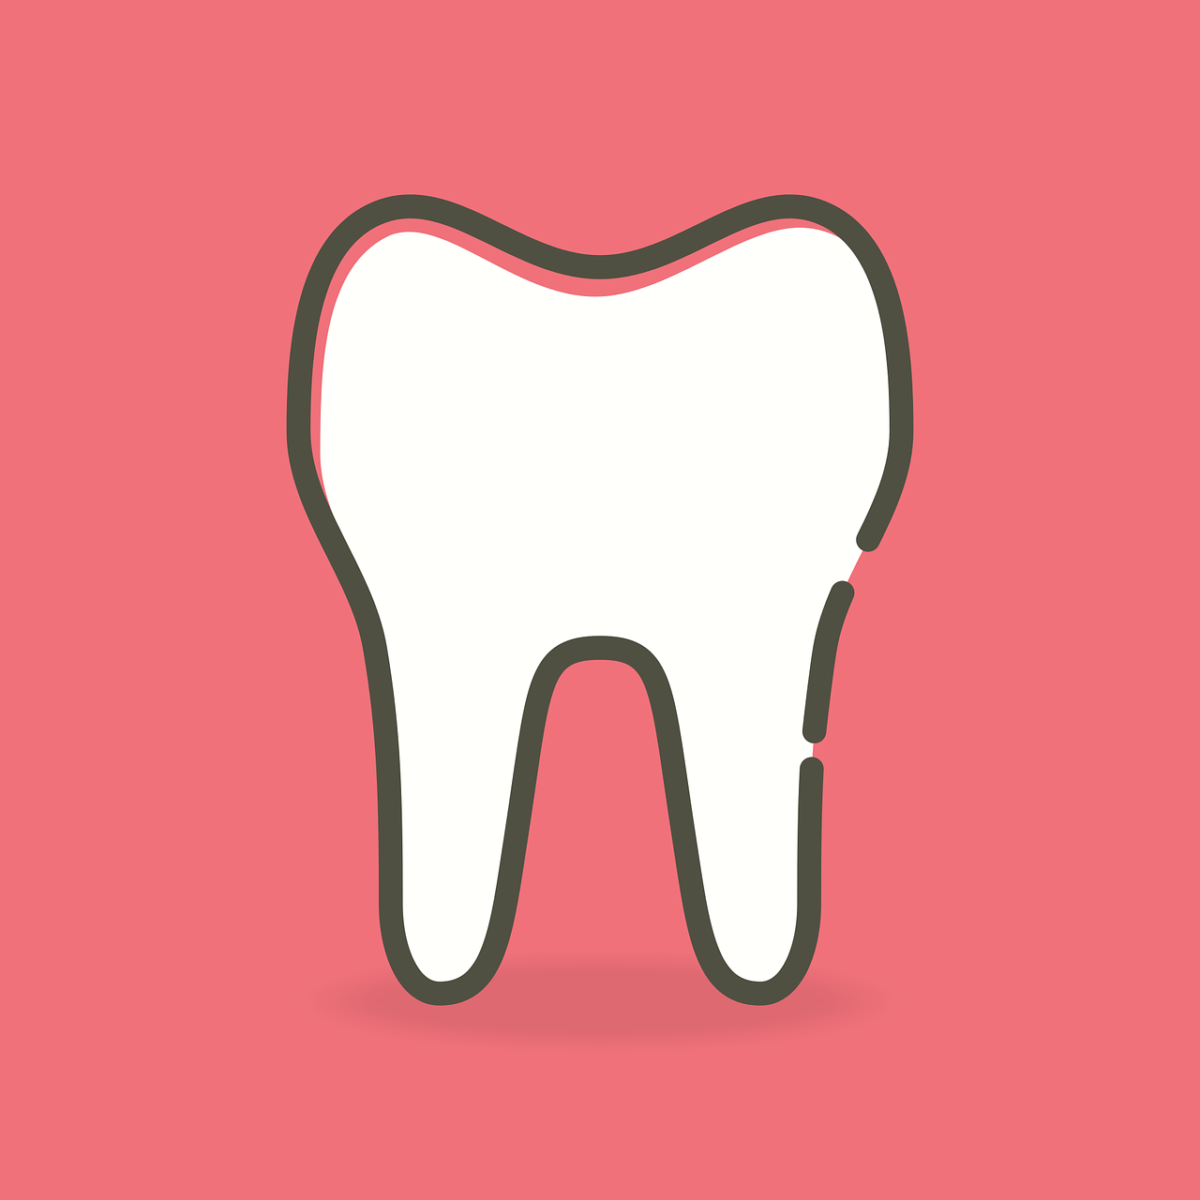 Ładne zdrowe zęby także powalający prześliczny uśmieszek to powód do dumy.